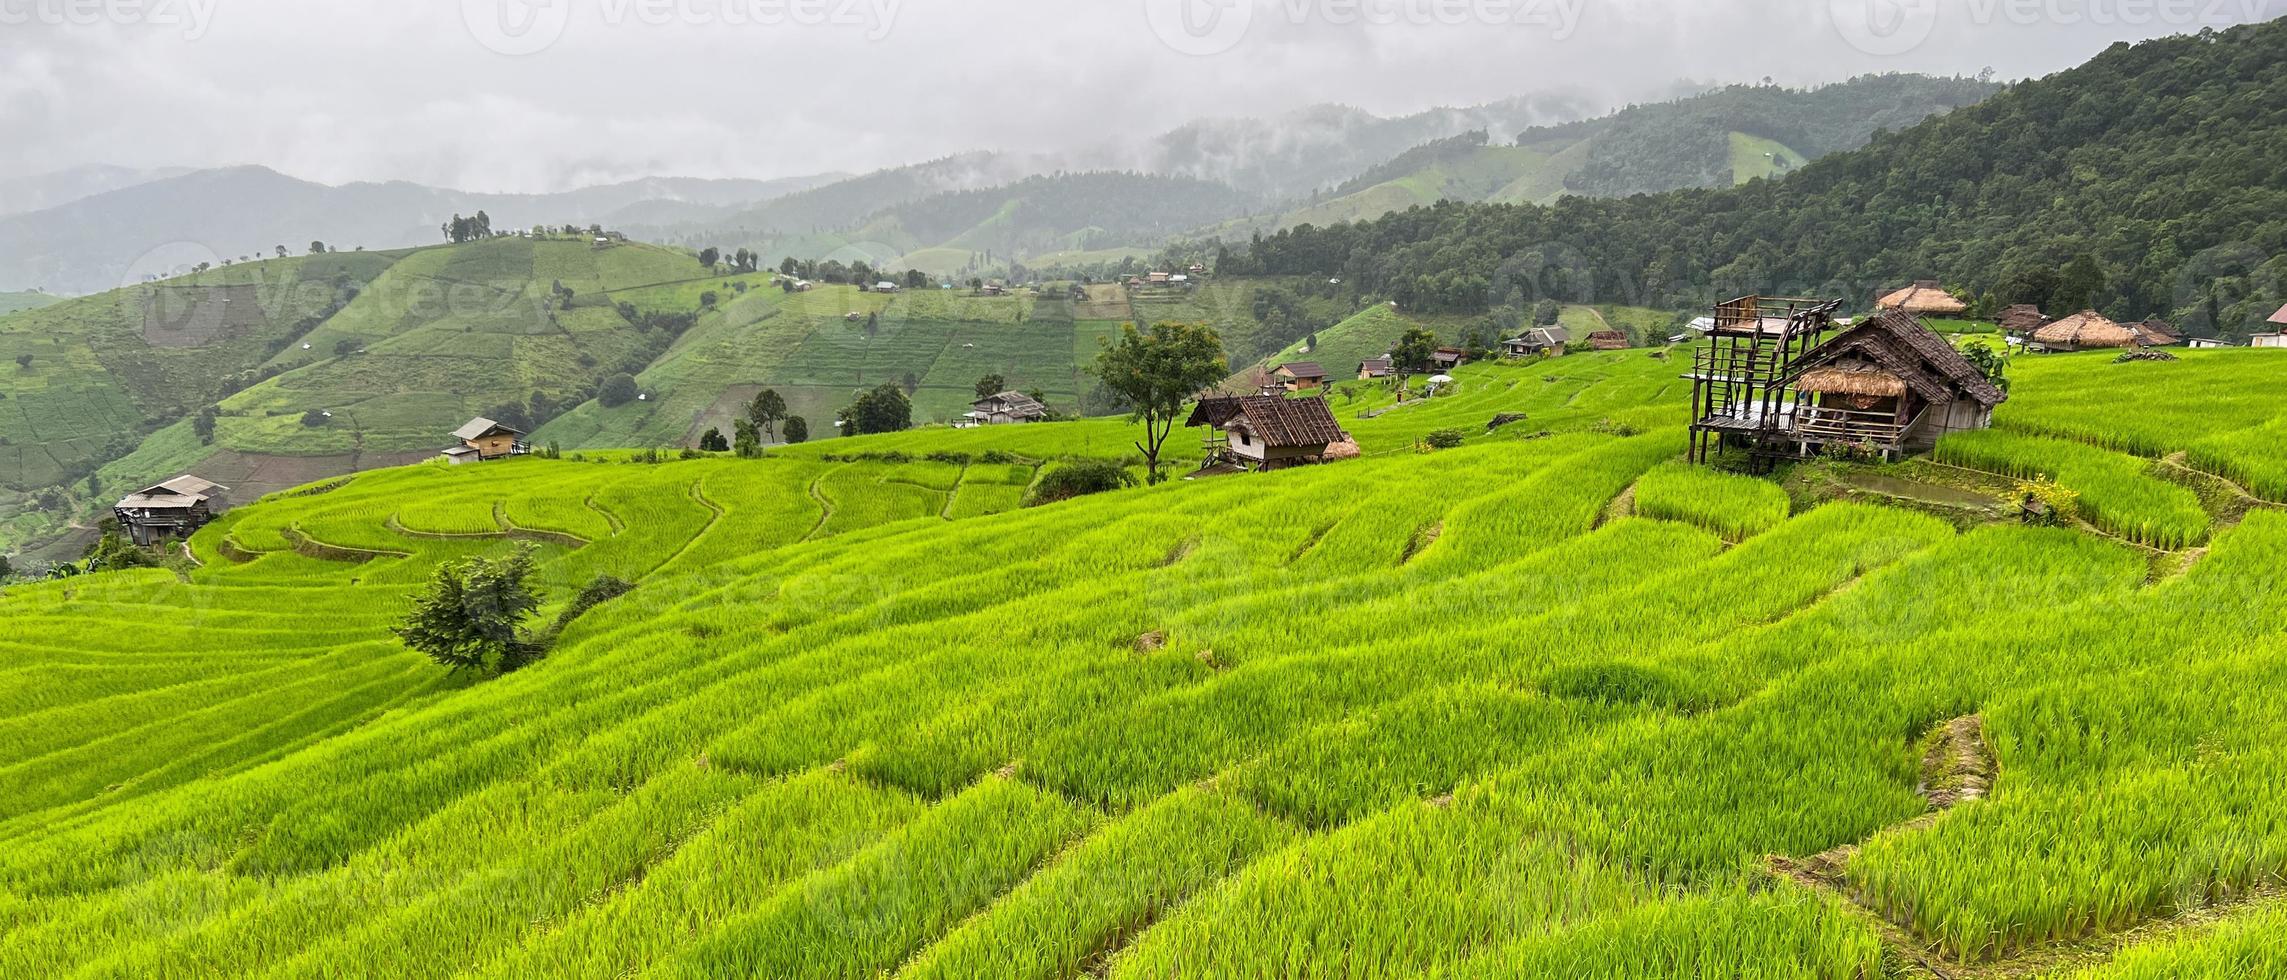 paysage d'une petite maison ancienne entourée de rizières en terrasses vertes et de montagnes par temps brumeux en saison des pluies à ban pa pong piang, chiangmai thaïlande photo